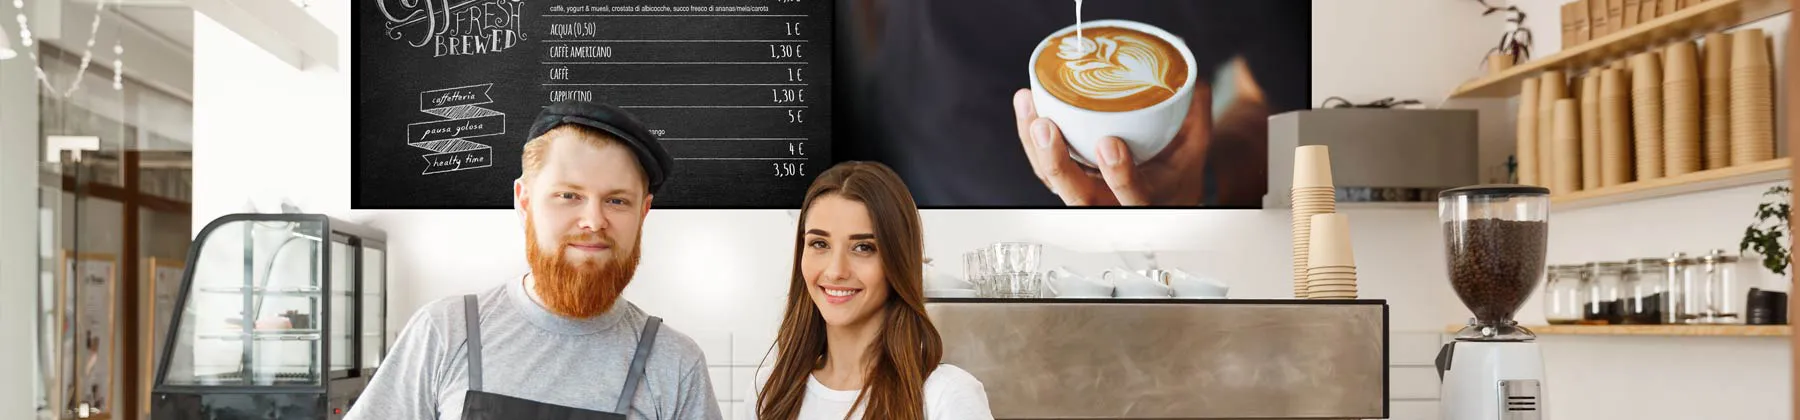 Menu digitali su display per caffetterie e ristoranti - kiosk